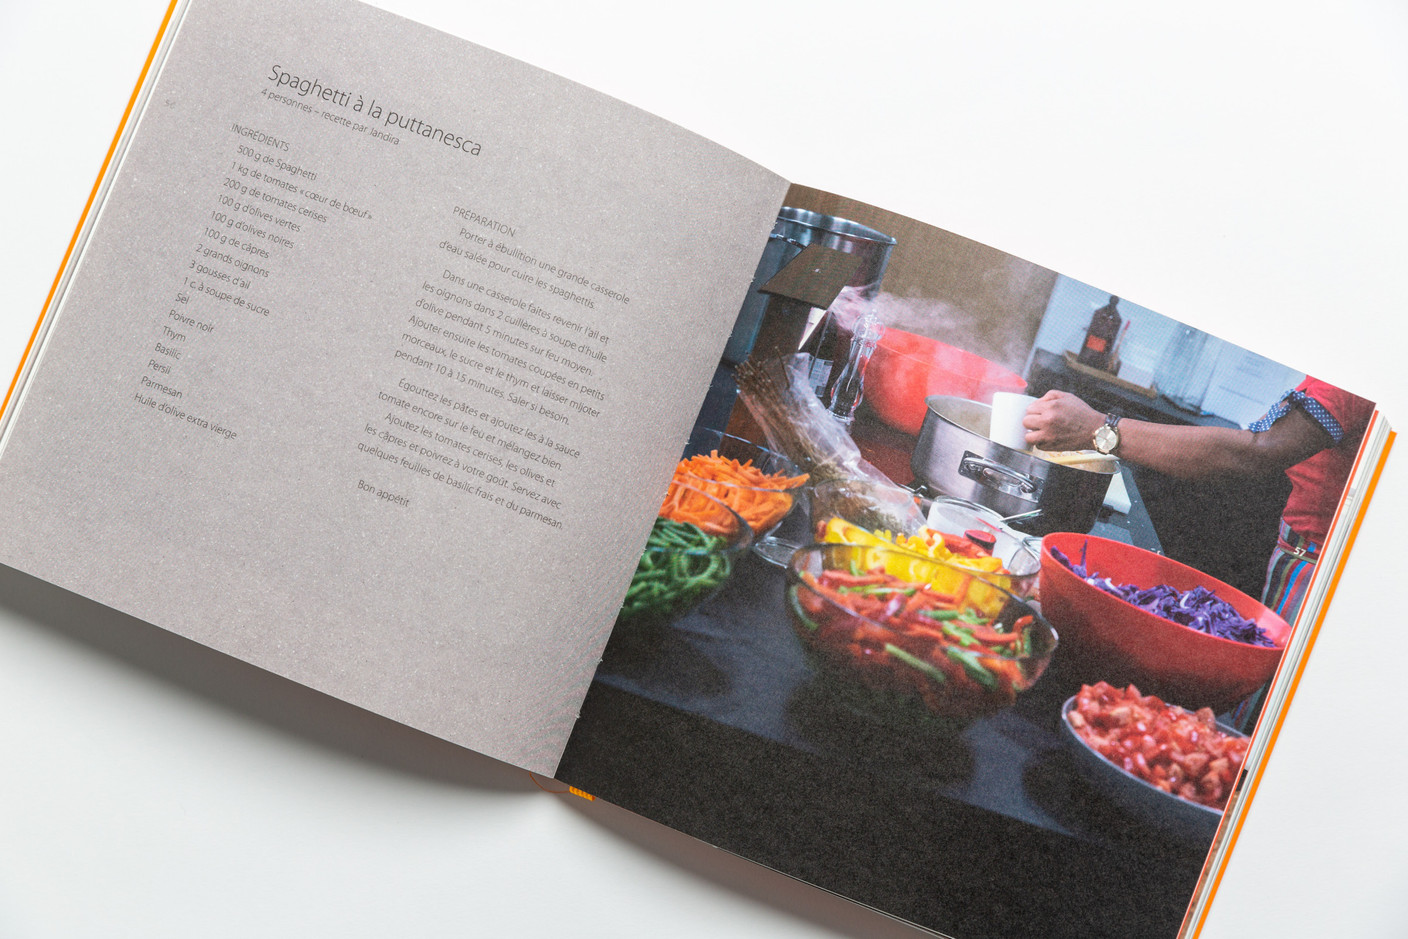 Le livre propose quelques recettes de plats qui sont régulièrement servis chez Jim Clemes Associates. (Photo: Romain Gamba/Maison Moderne)